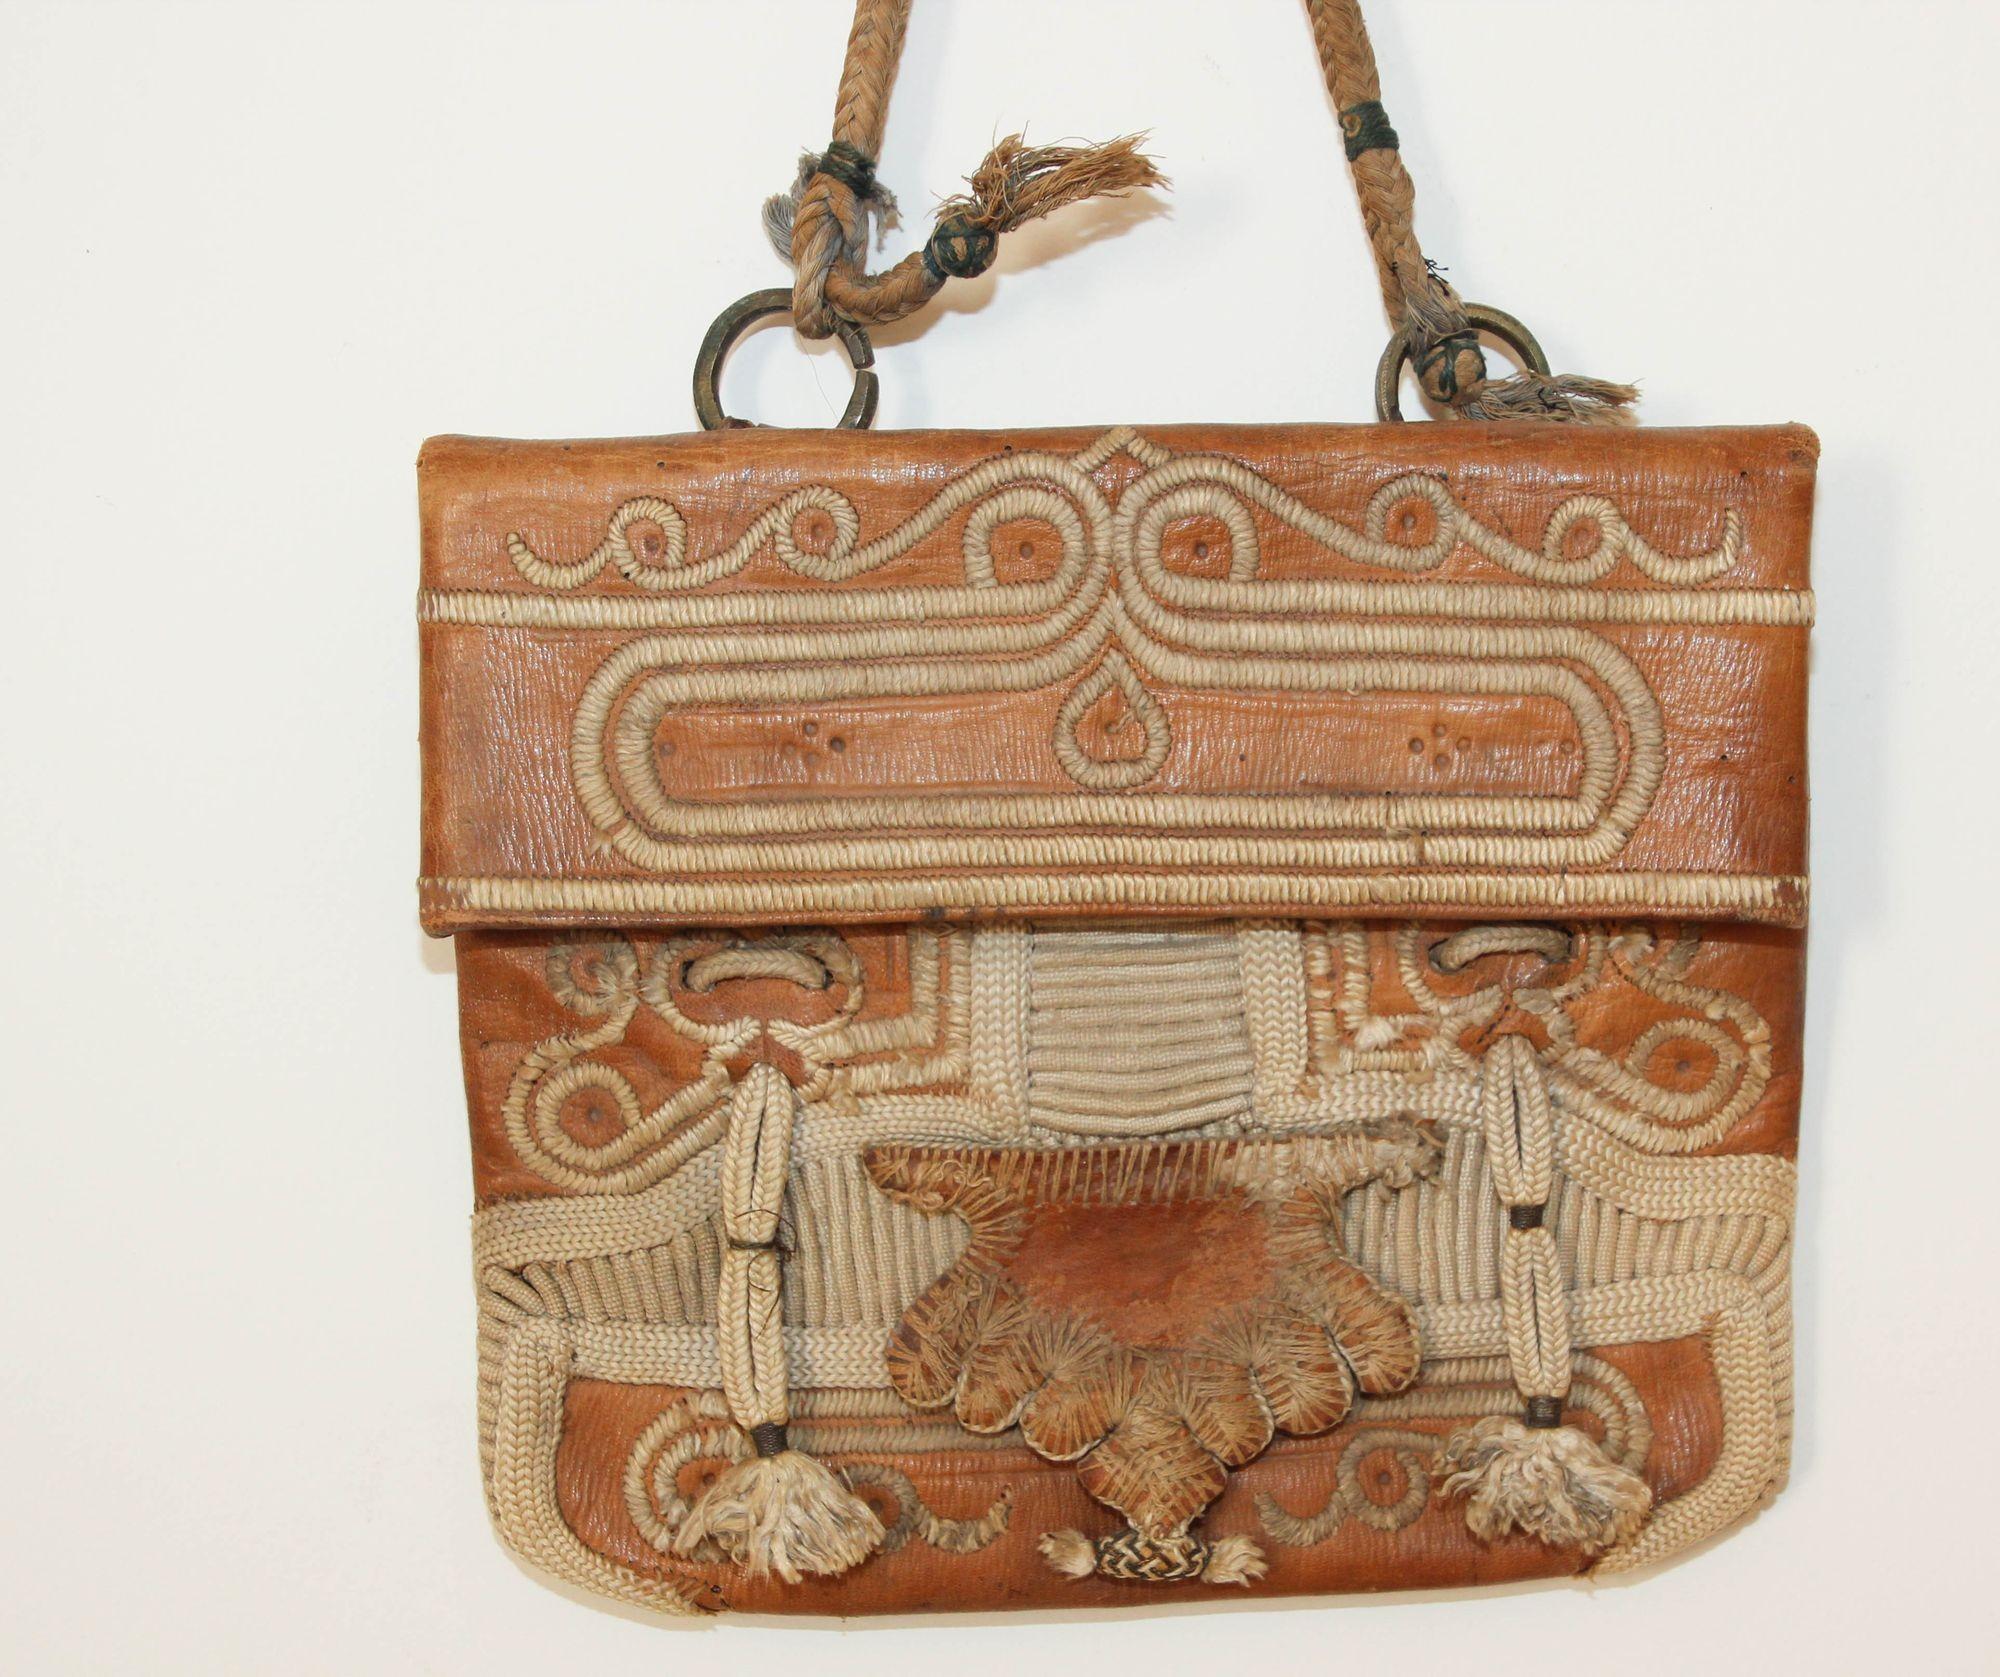 Sacoche ancienne de collection en cuir africain marocain avec rabat décoré de broderies mauresques traditionnelles.
Fabriqué à la main à Marrakech, il s'agit d'un vieux sac à bandoulière antique, les marchands au Maroc lorsqu'ils voyageaient